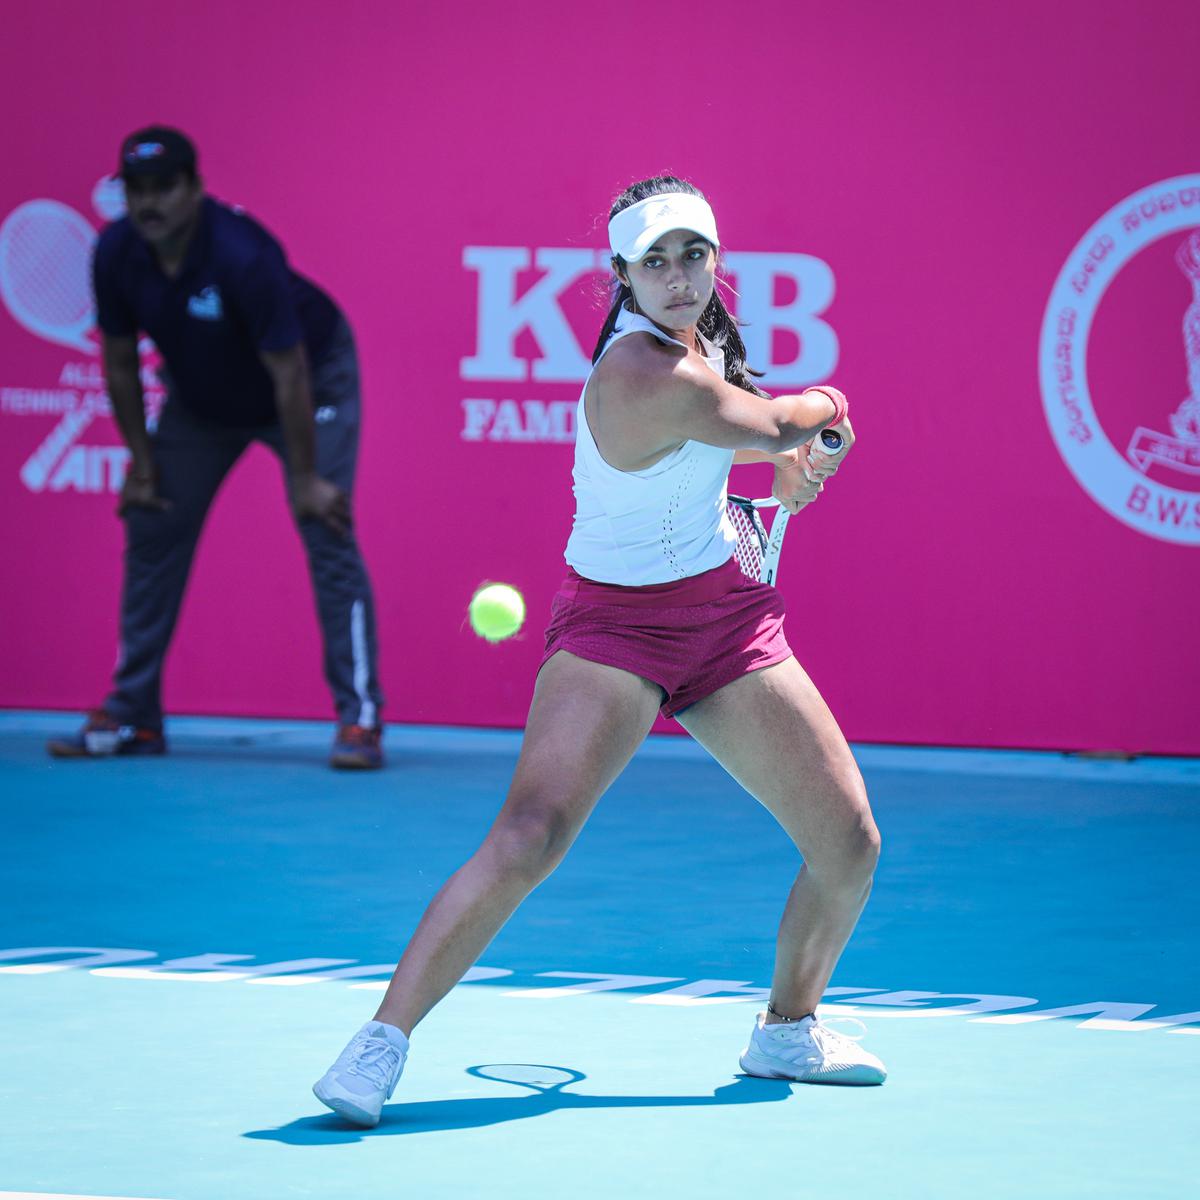 ITF Women’s Tour, Bengaluru: Vaidehi se kvalifikuje do prvního kola, nasazená je česká teenagerka Brenda Fruhvirdová